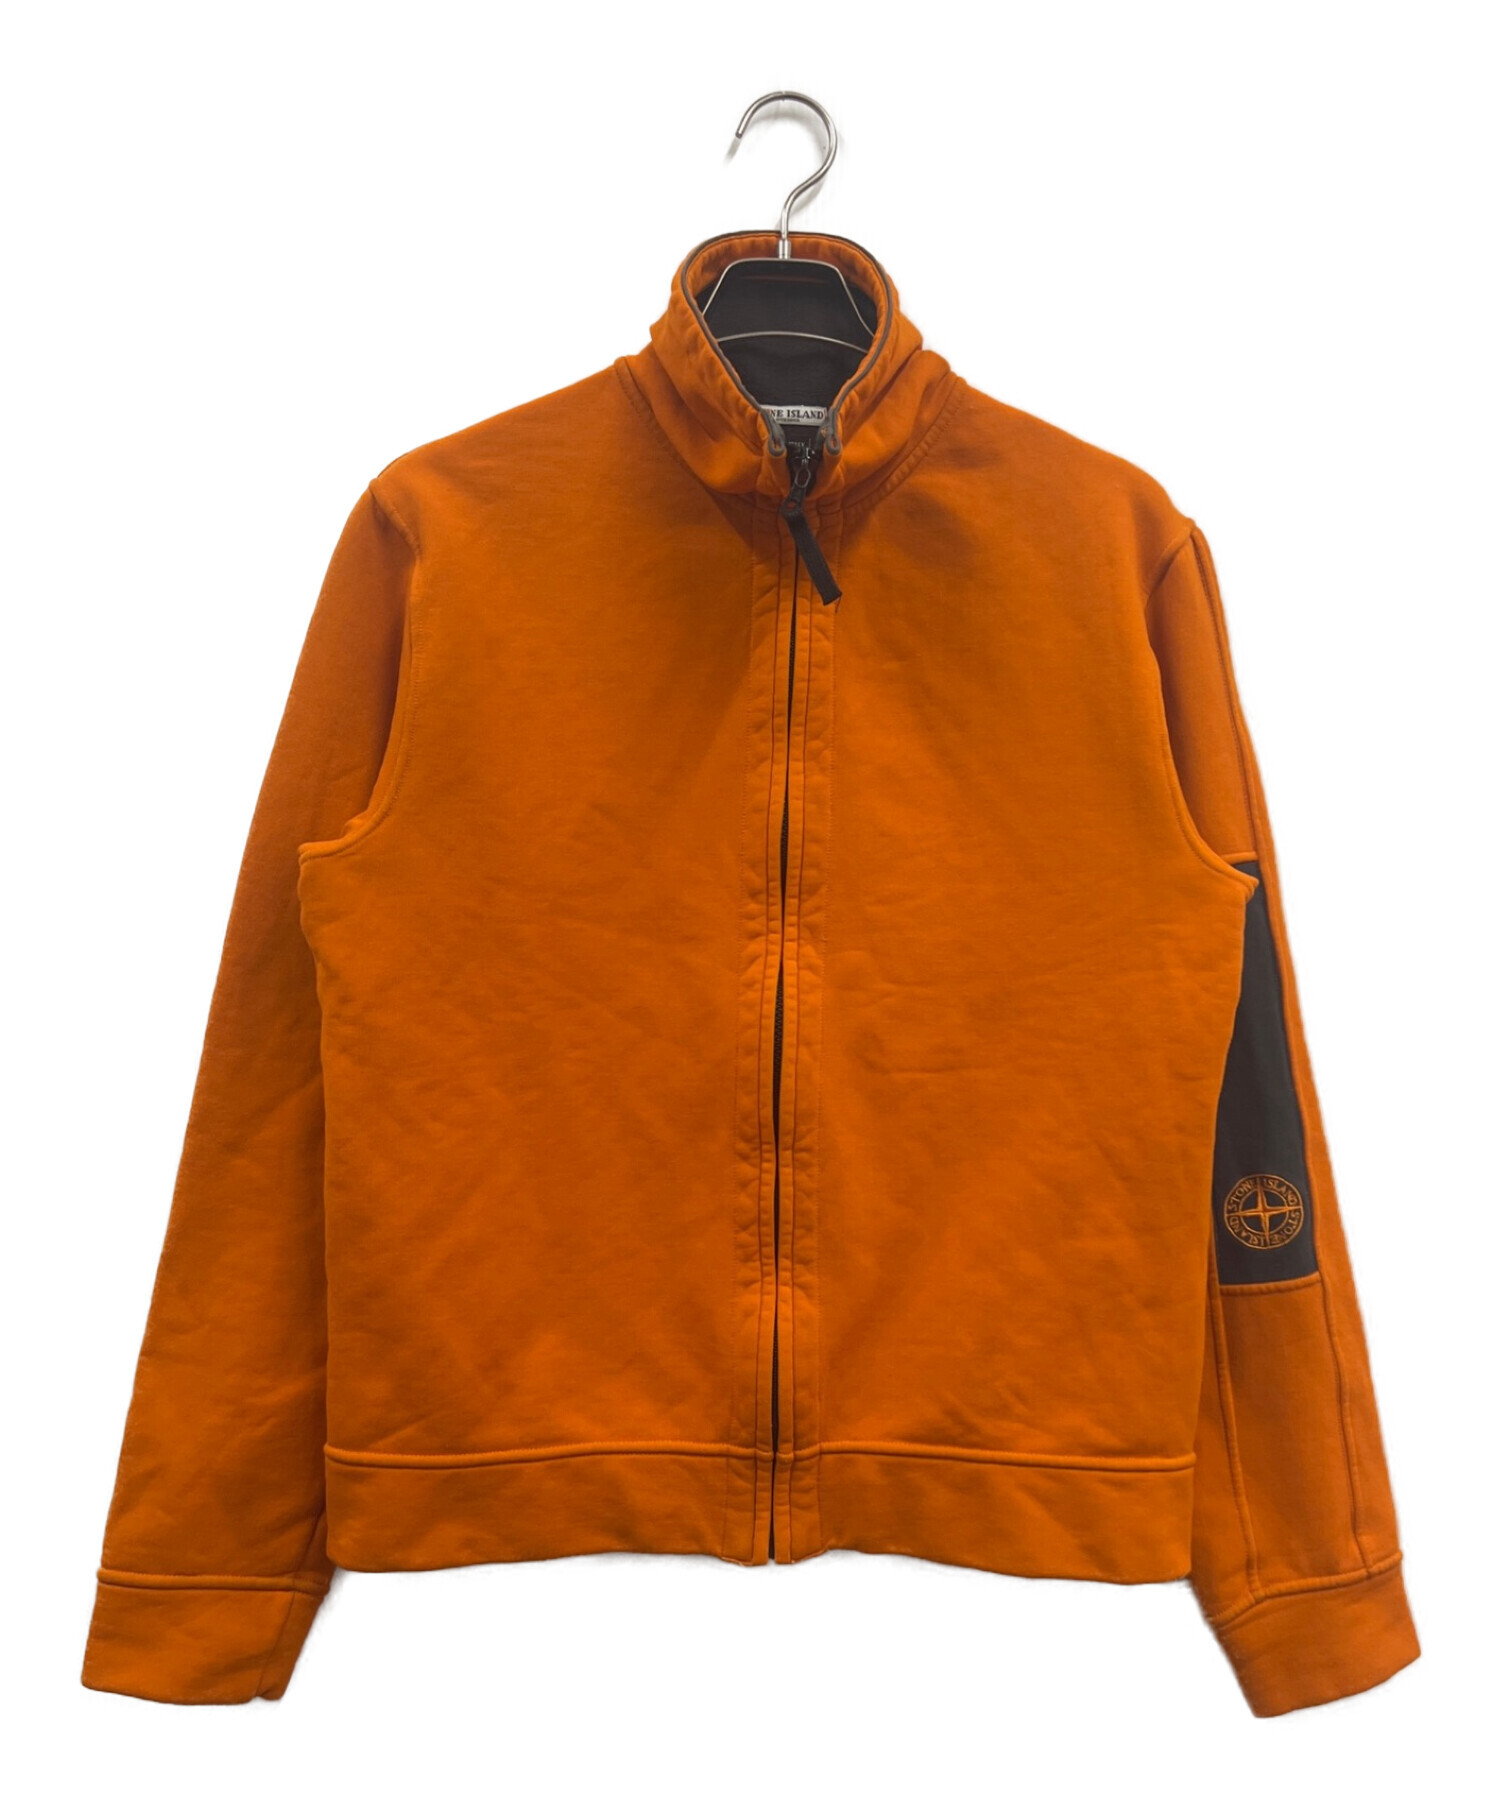 STONE ISLAND (ストーンアイランド) ロゴマークトラックジャケット オレンジ サイズ:M